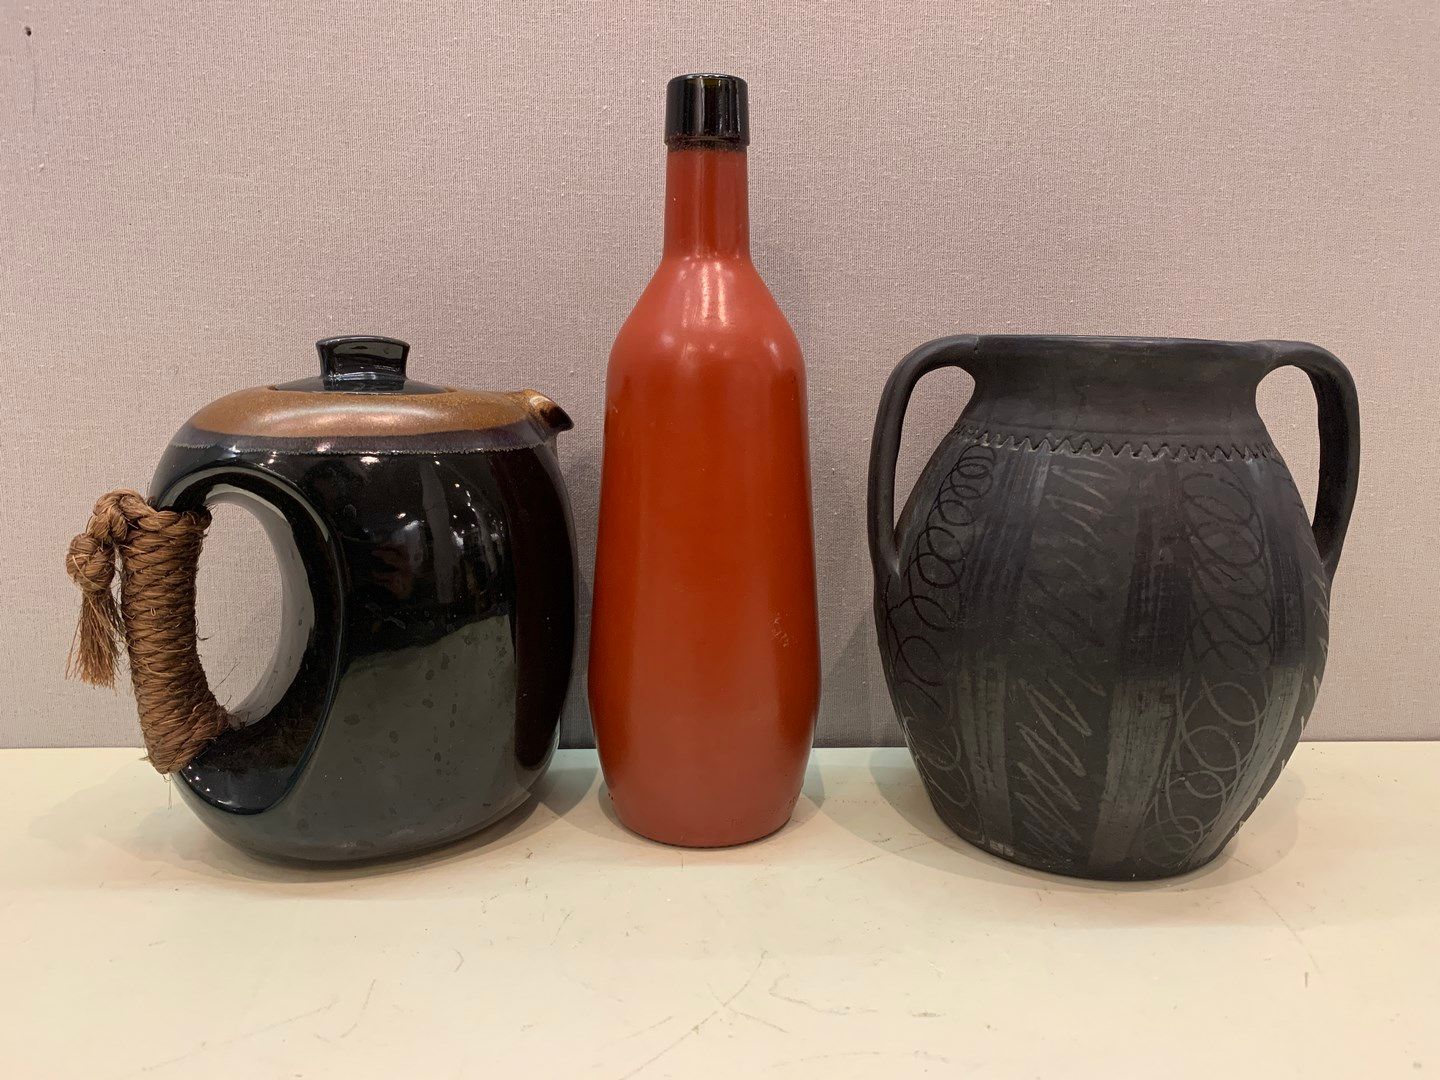 Null Keramikset bestehend aus 1 Teekanne, 1 Vase mit zwei Henkeln und 1 Karaffe